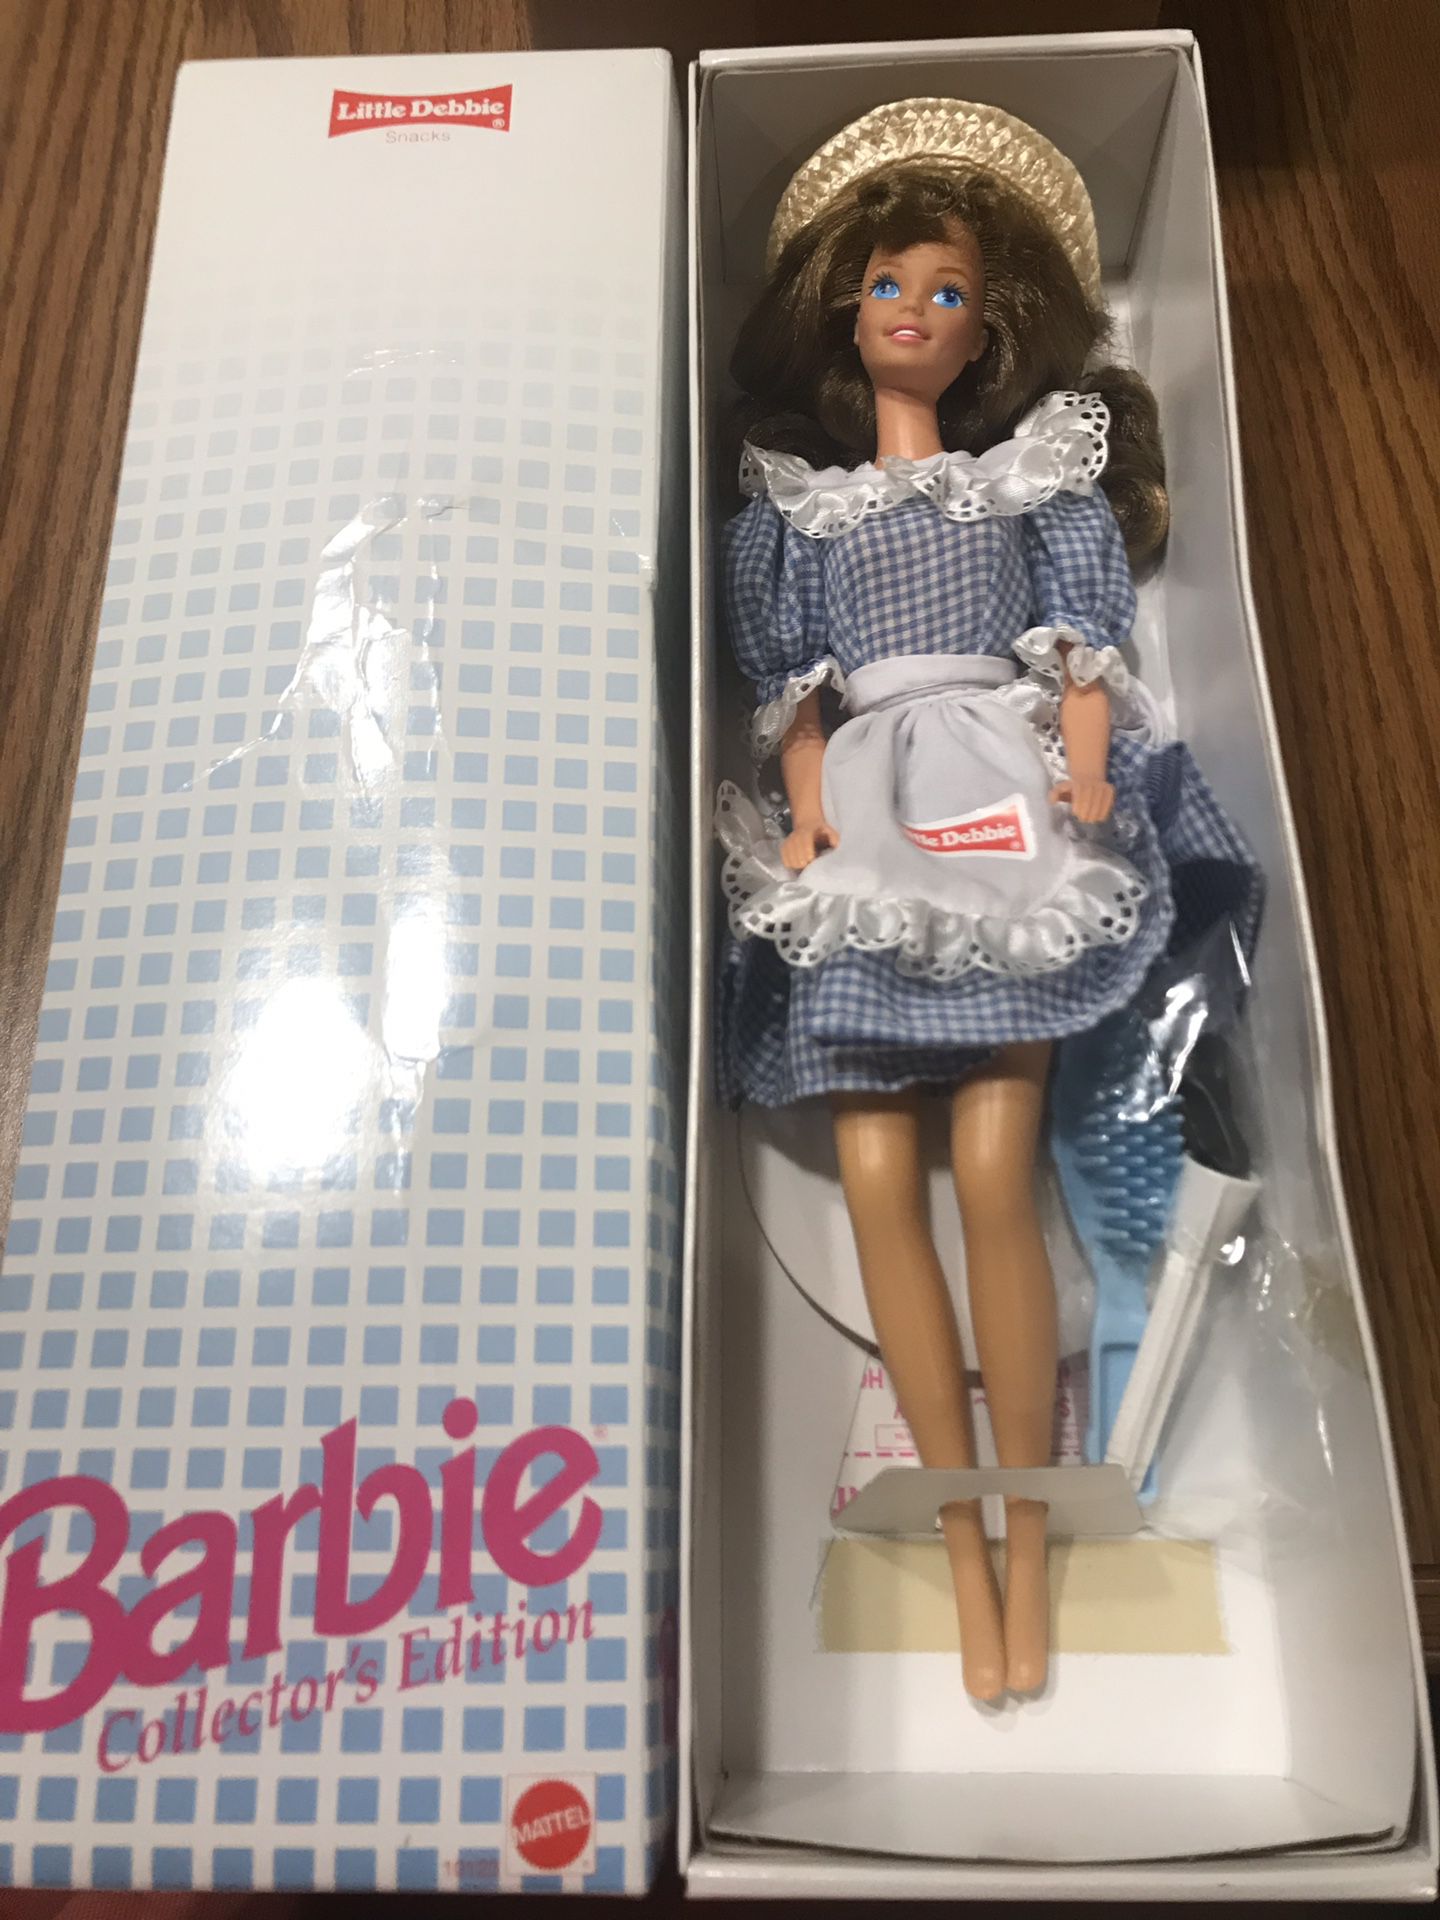 Barbie 1993 little debbie